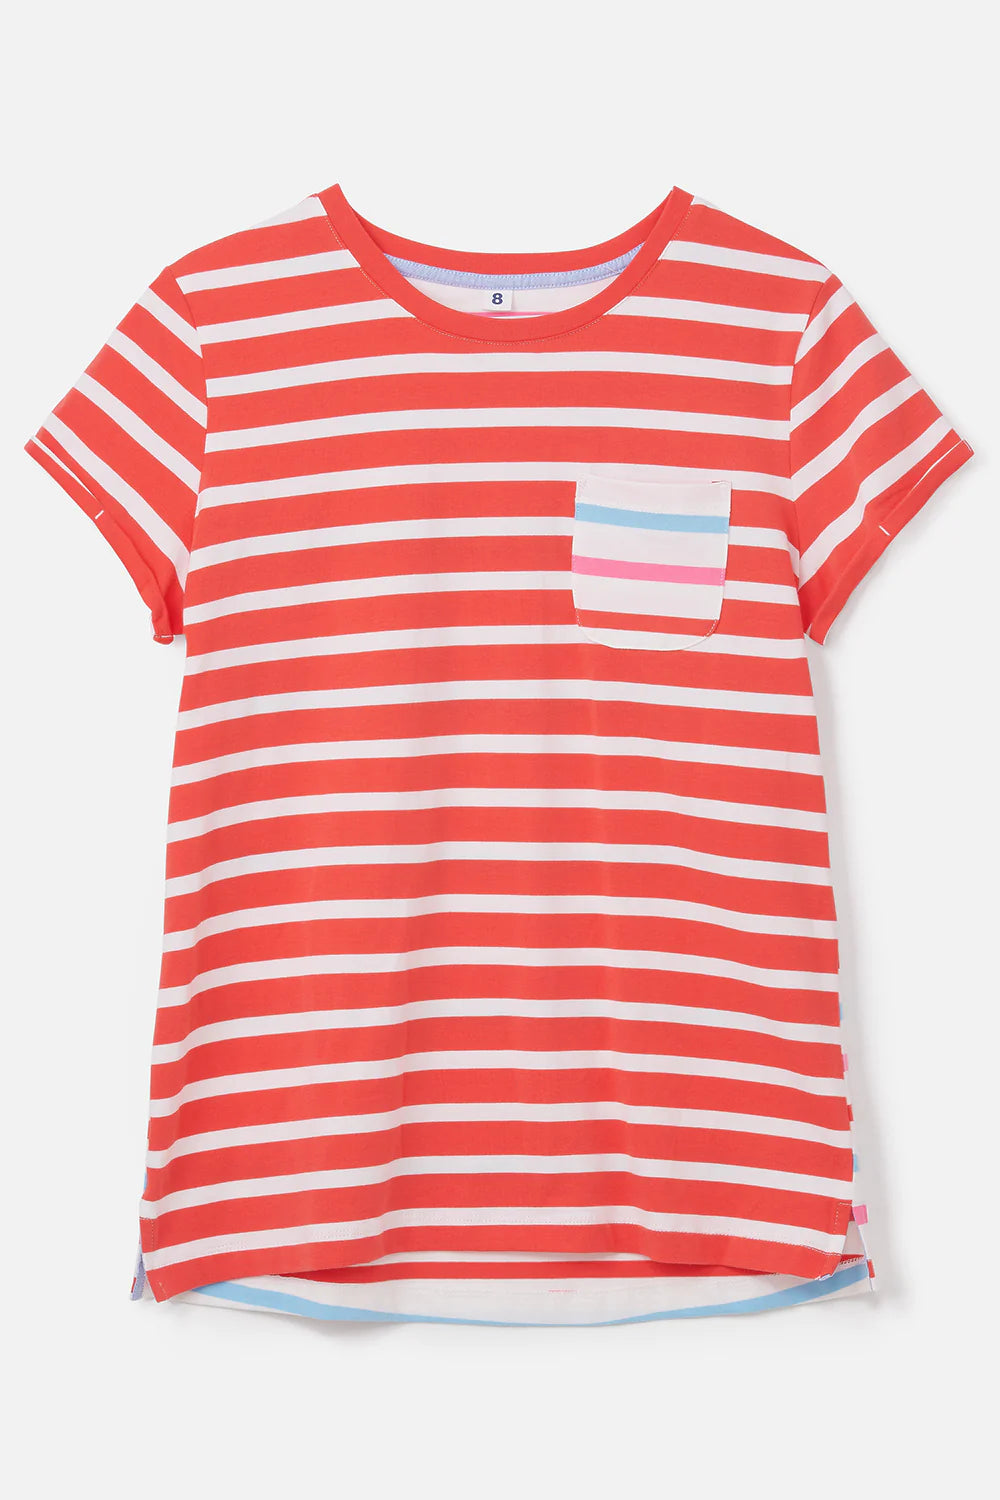 Lighthouse Causeway Short Sleeve T-Shirt -  Watermelon Stripe